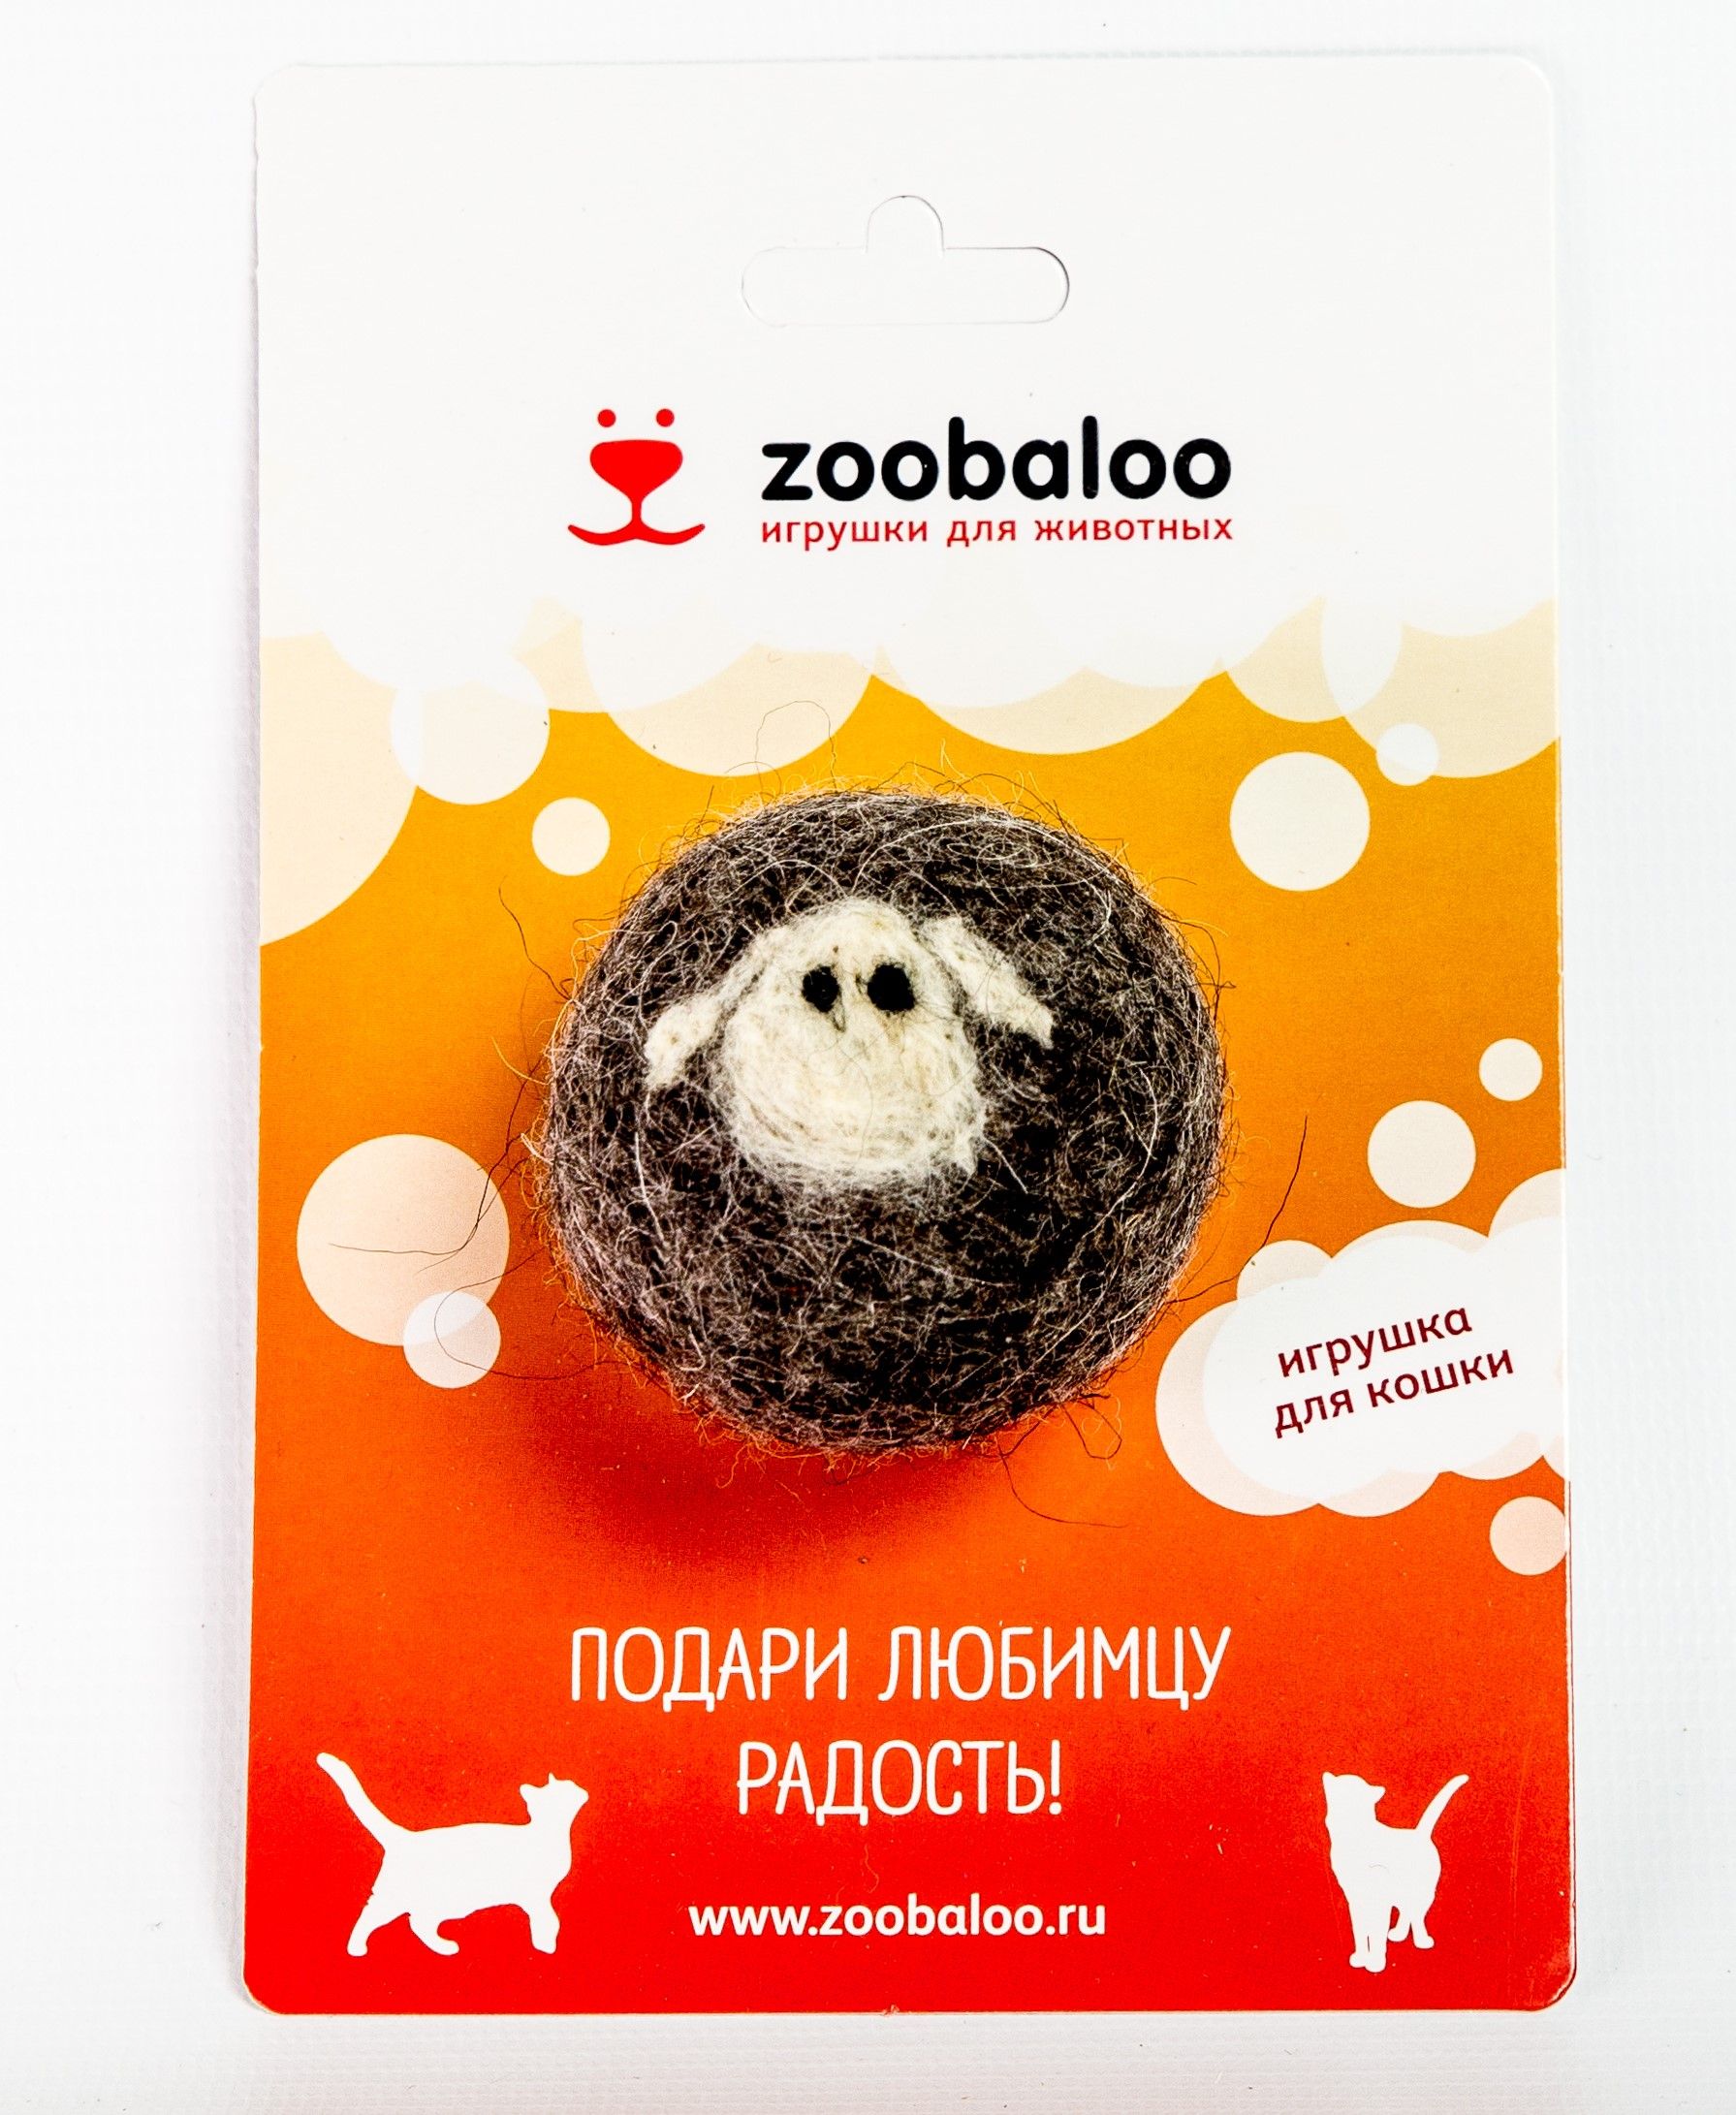    Zoobaloo 365, 